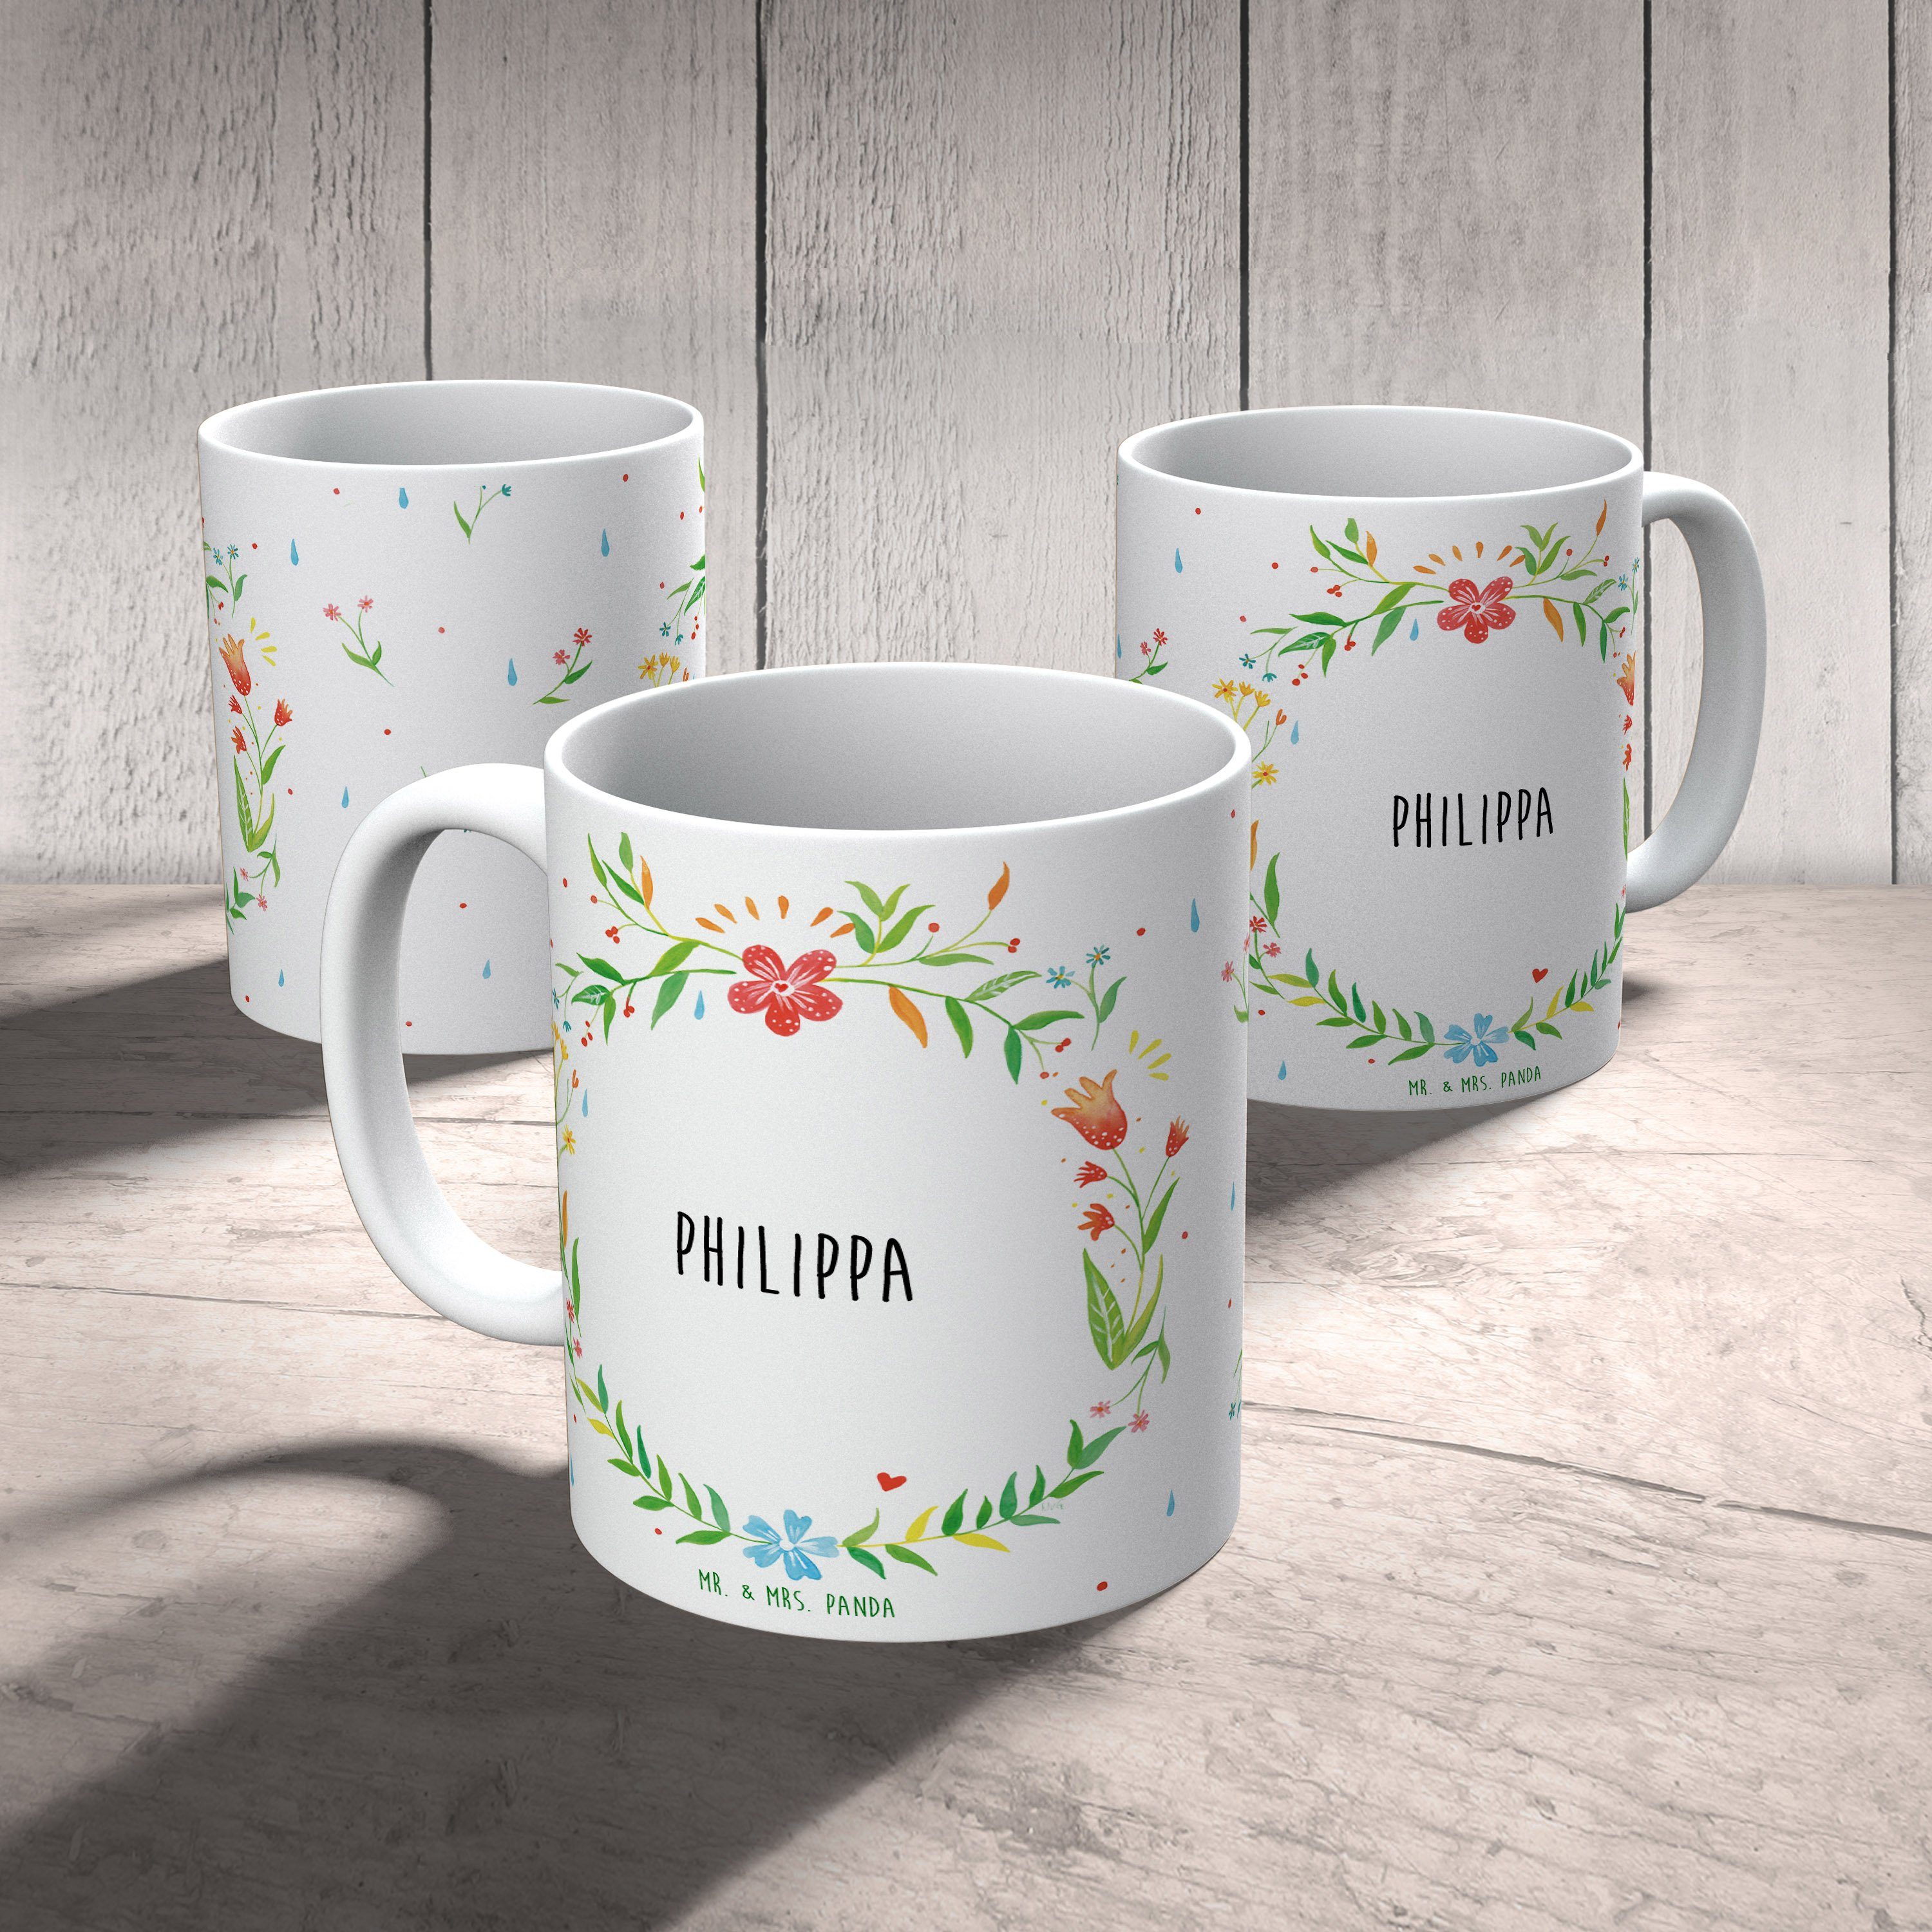 Mr. & Mrs. Panda Teebecher, Tasse Geschenk, Philippa Porzellantass, - Teetasse, Kaffeebecher, Keramik